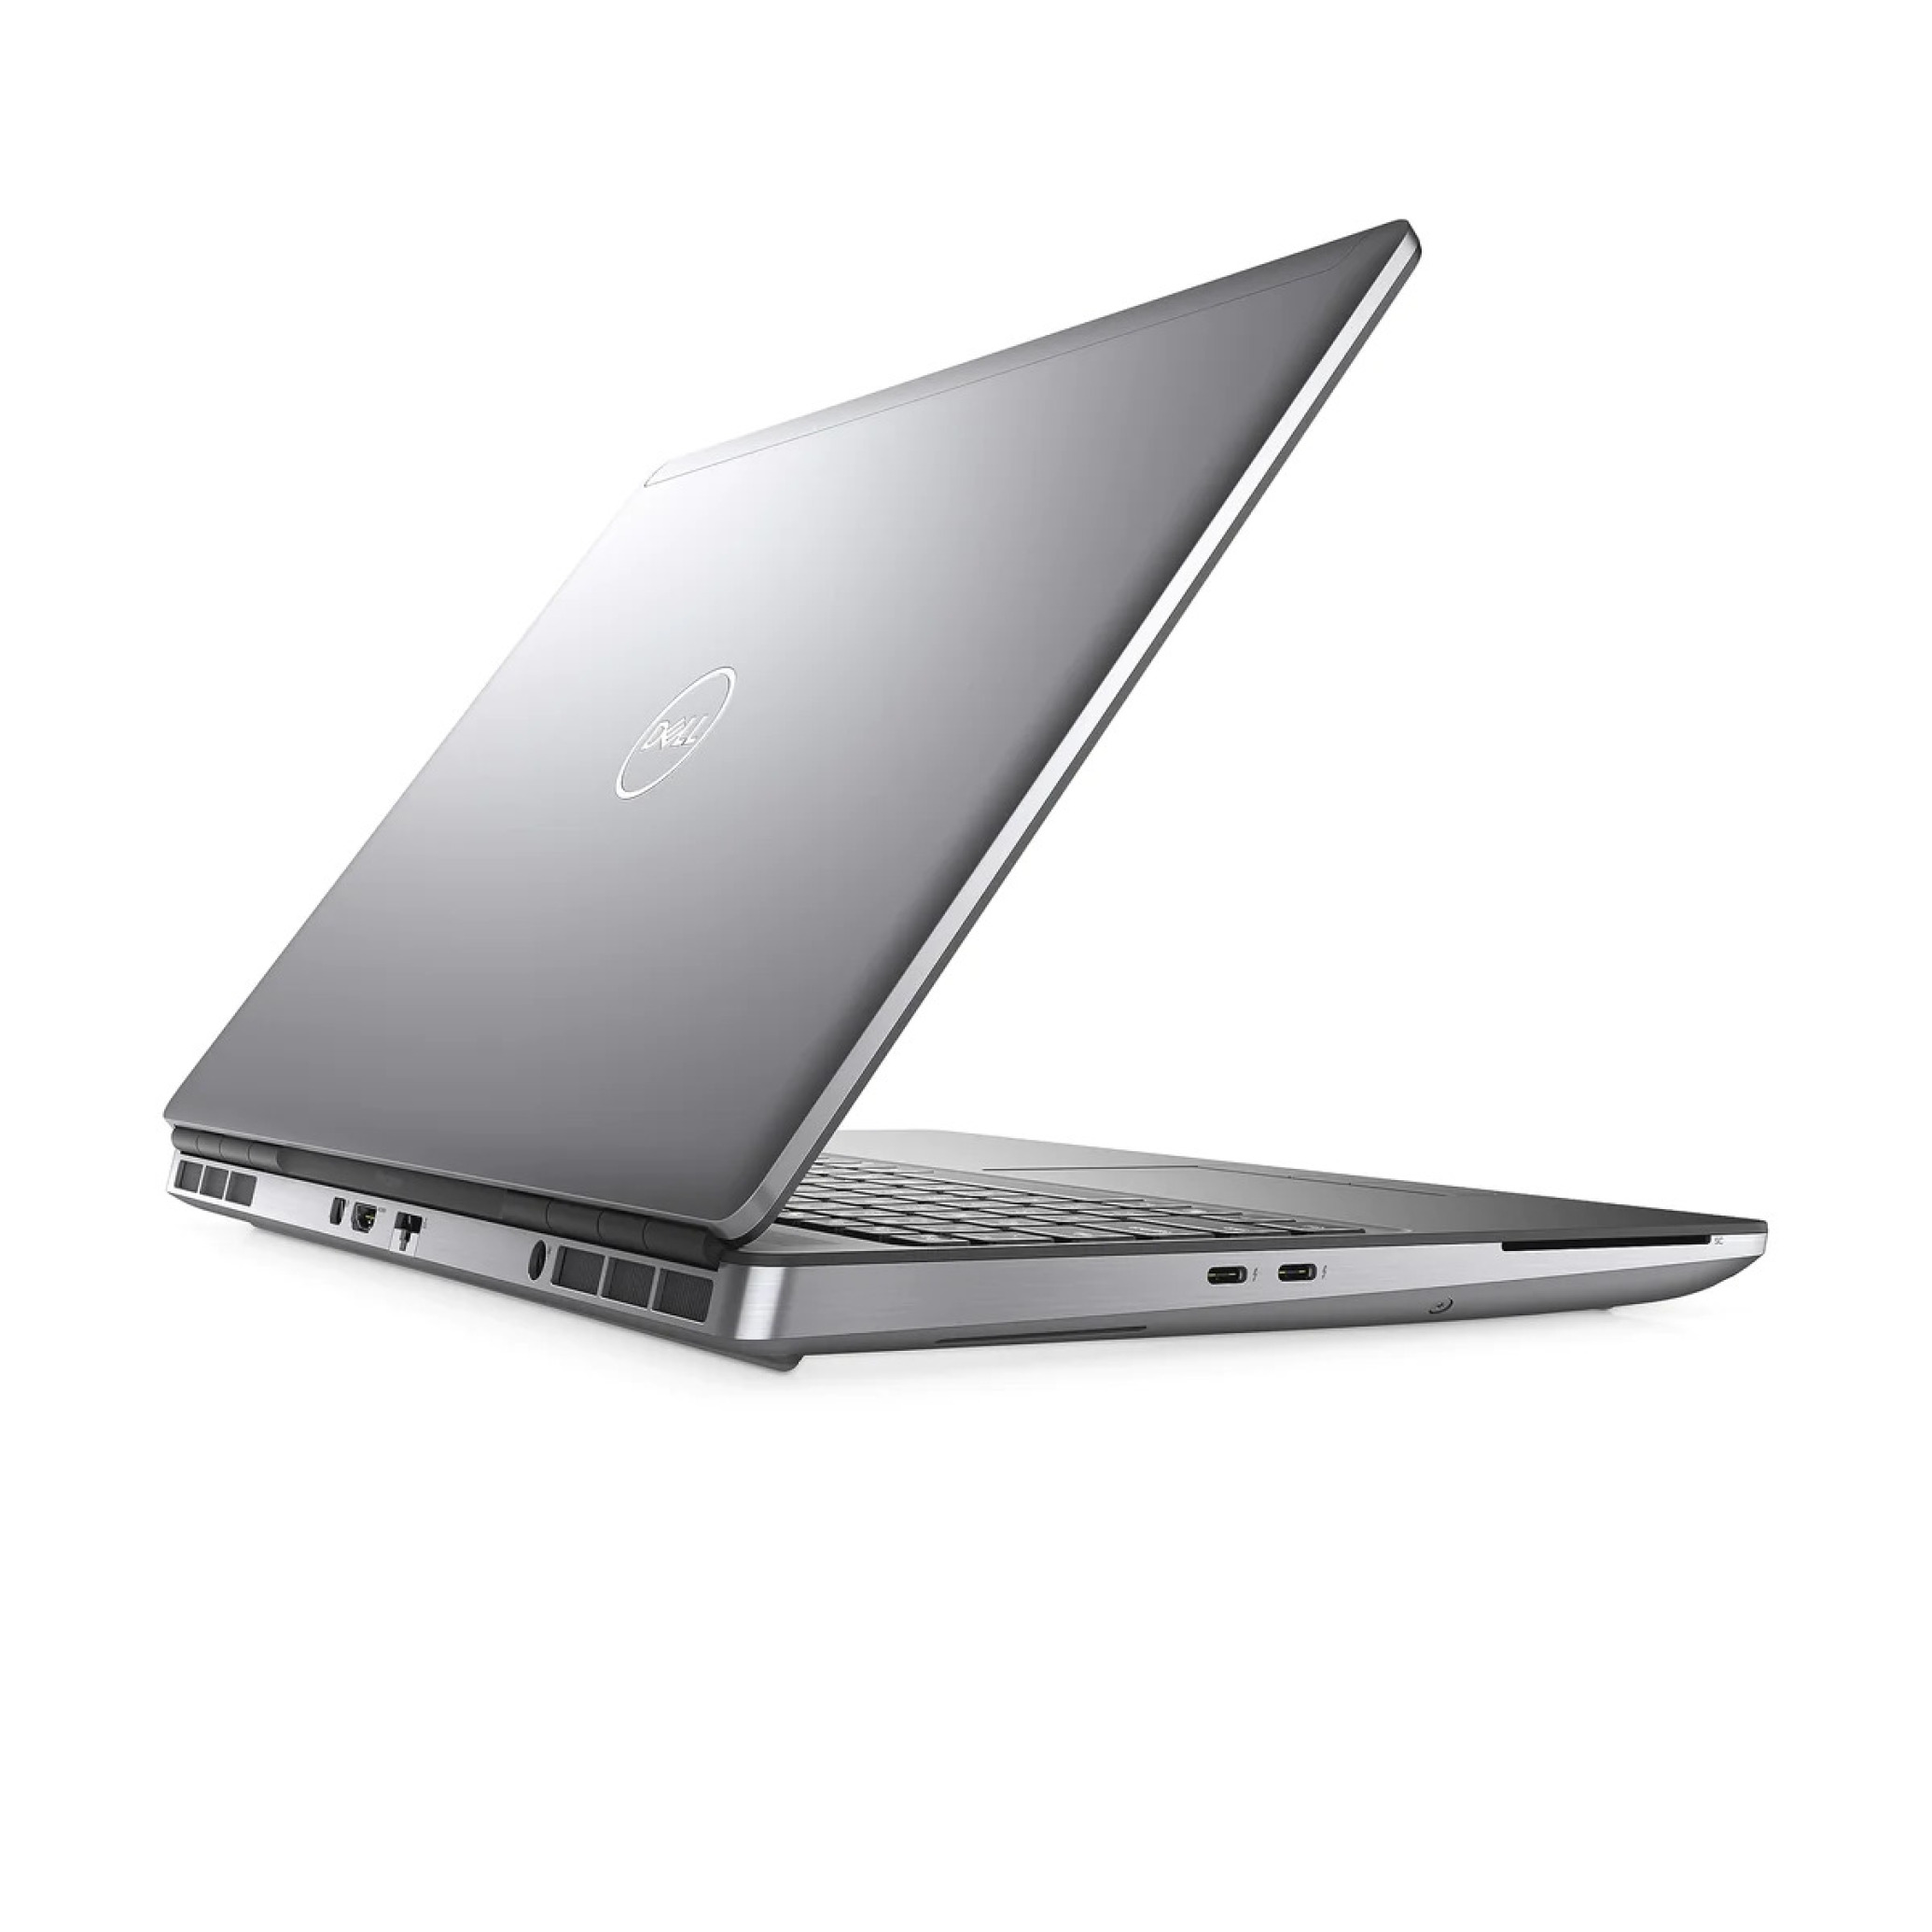  خرید و قیمت لپ تاپ Dell Precision 7550 - Xeon W-10855M - RTX A3000 6GB | لاکچری لپ تاپ 